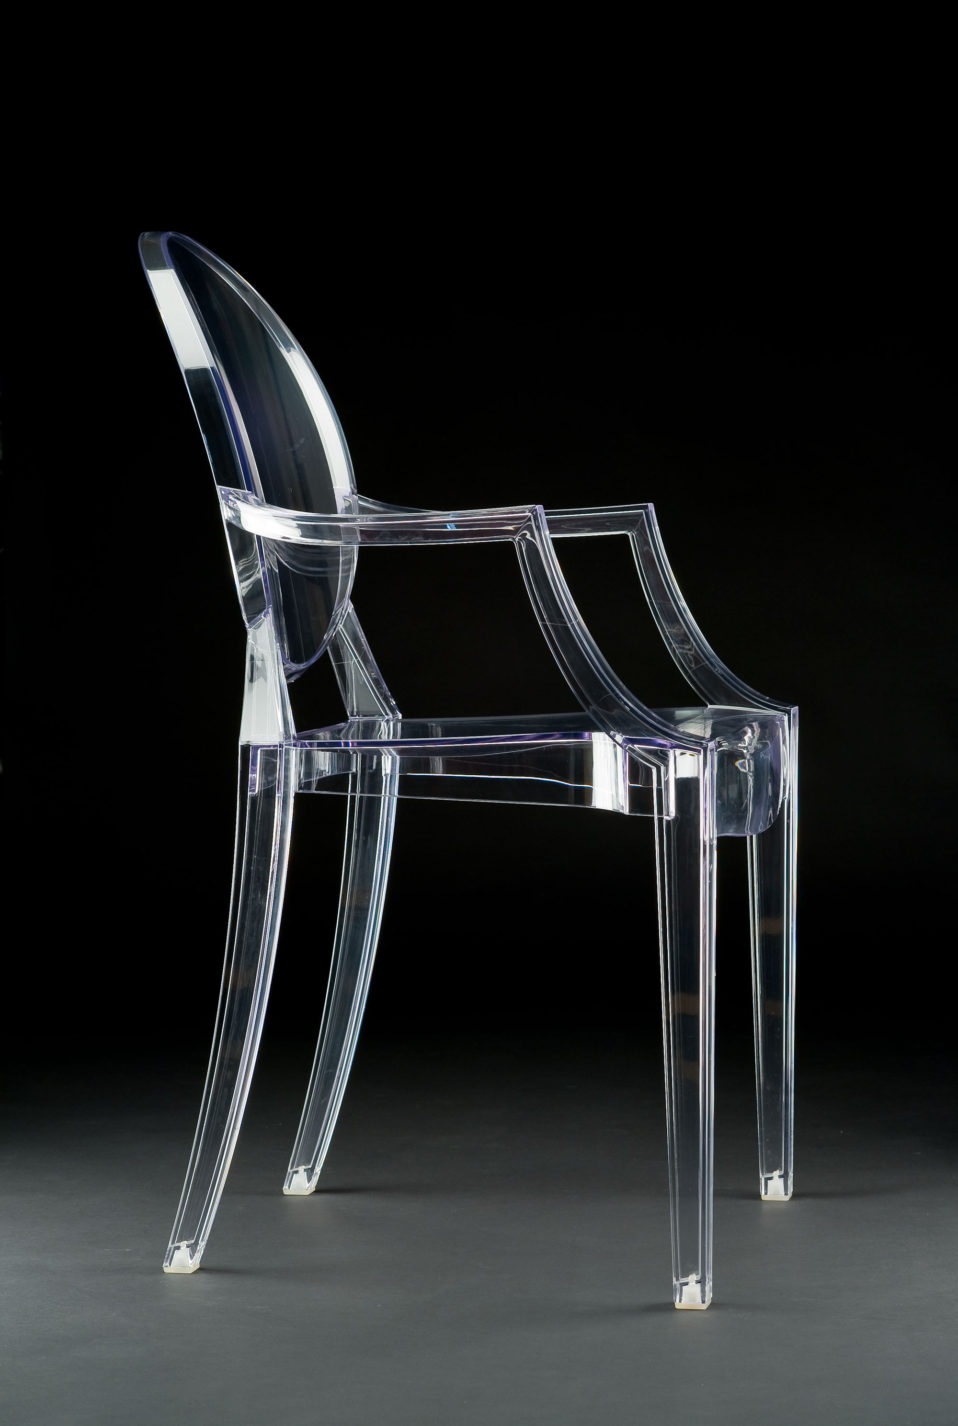 Fauteuil de plastique transparent à dos ovale de la forme des chaises antiques.